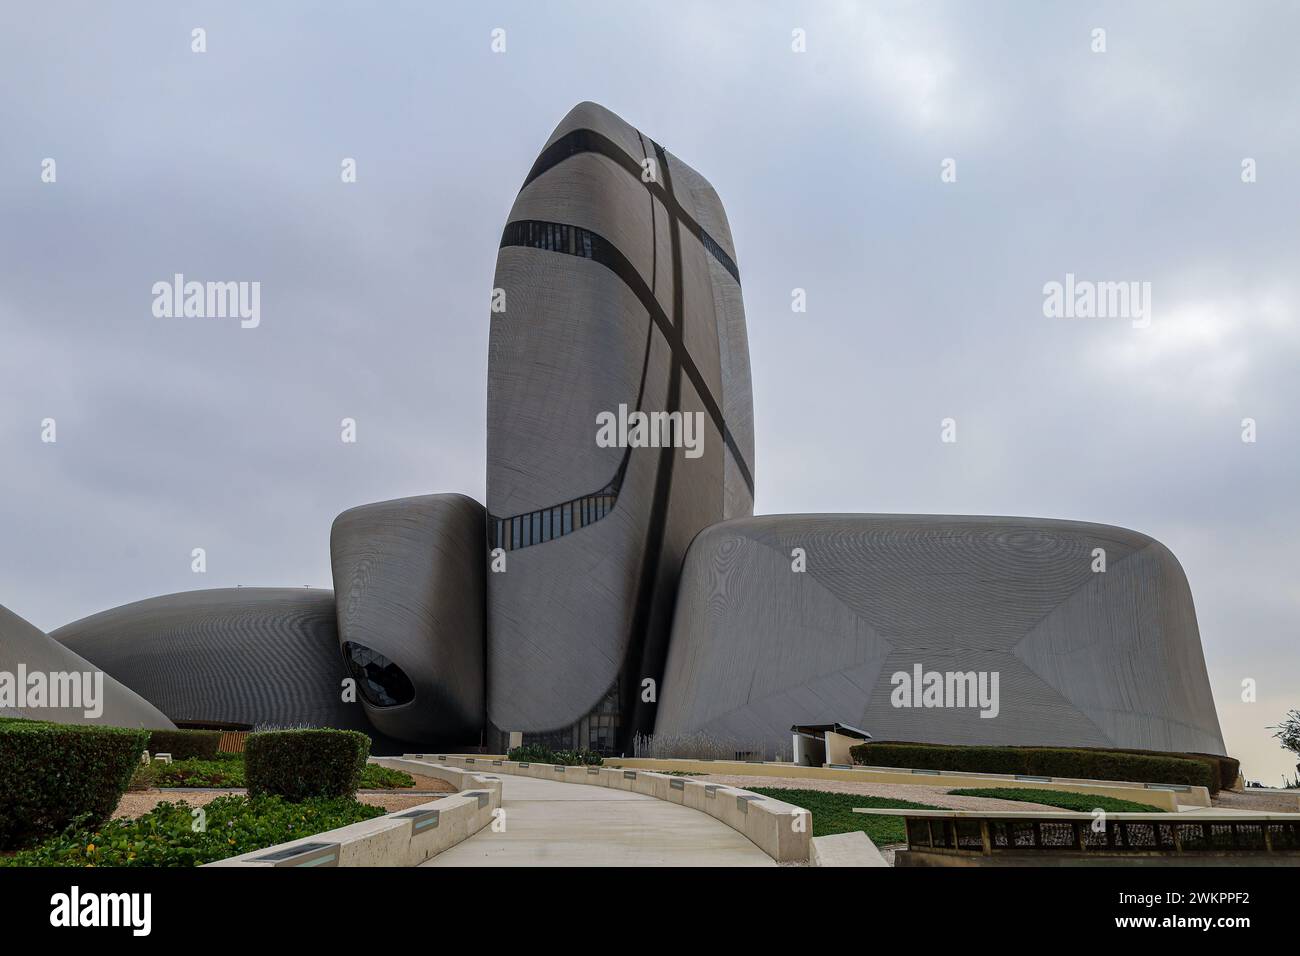 Dammam, Arabie saoudite, 17 février 2024. Le King Abdulaziz Center for World culture ksa Aramco Oil Company - développement culturel au sein du Royaume. ithr Banque D'Images